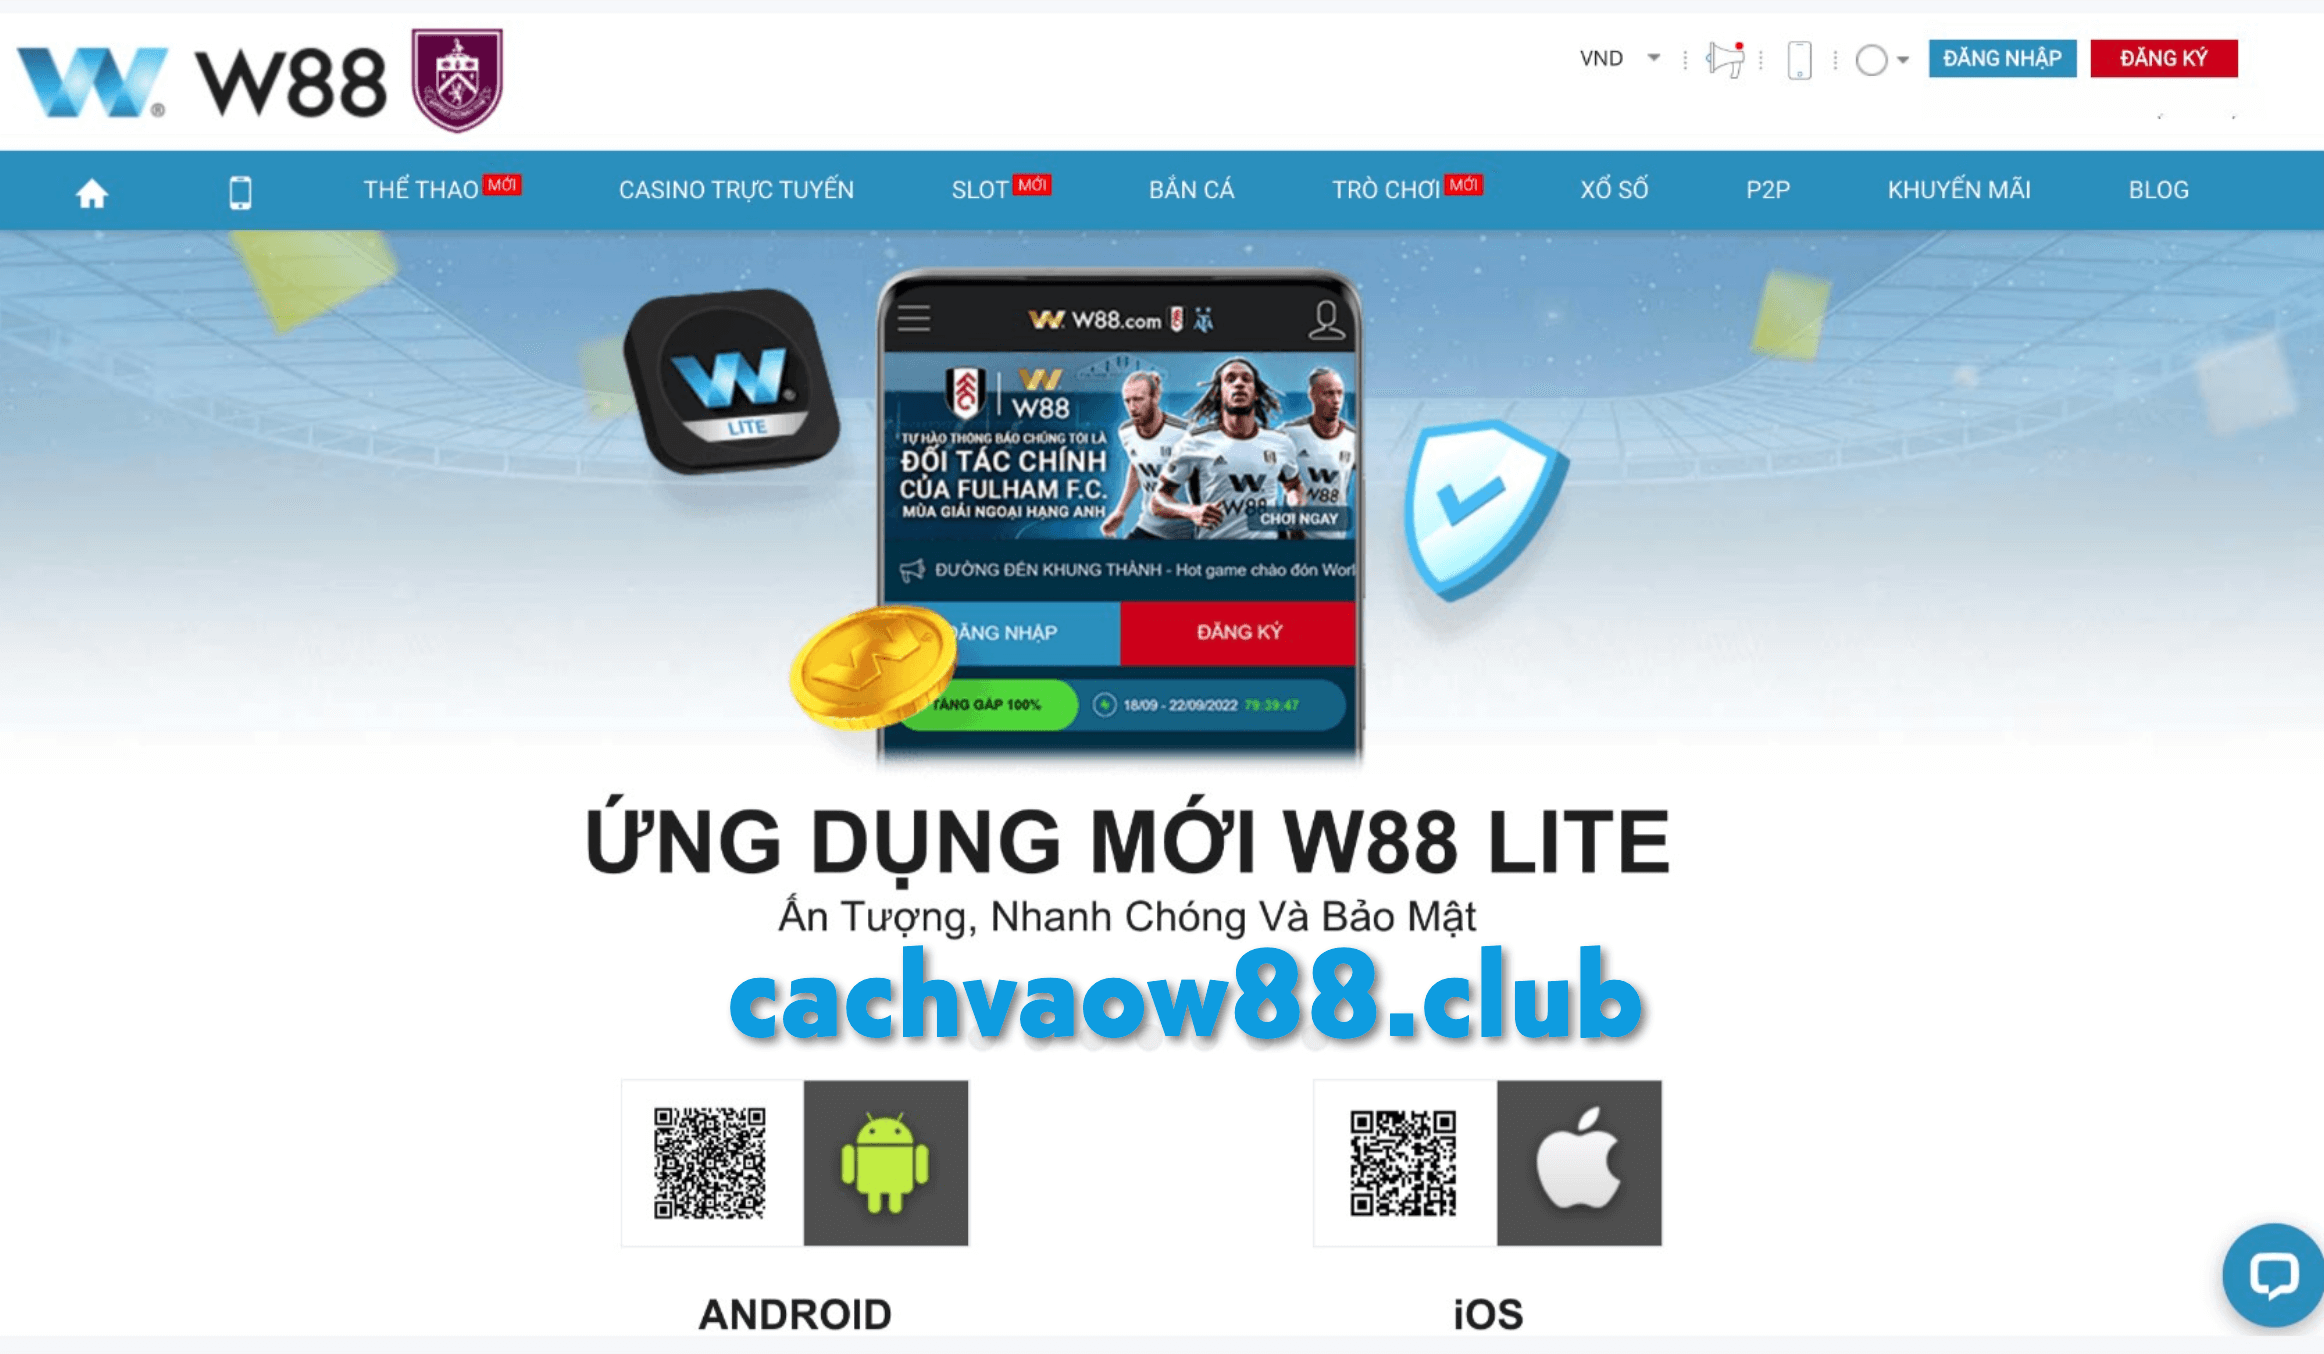 W88 đã có app mobile cho Android và iOS